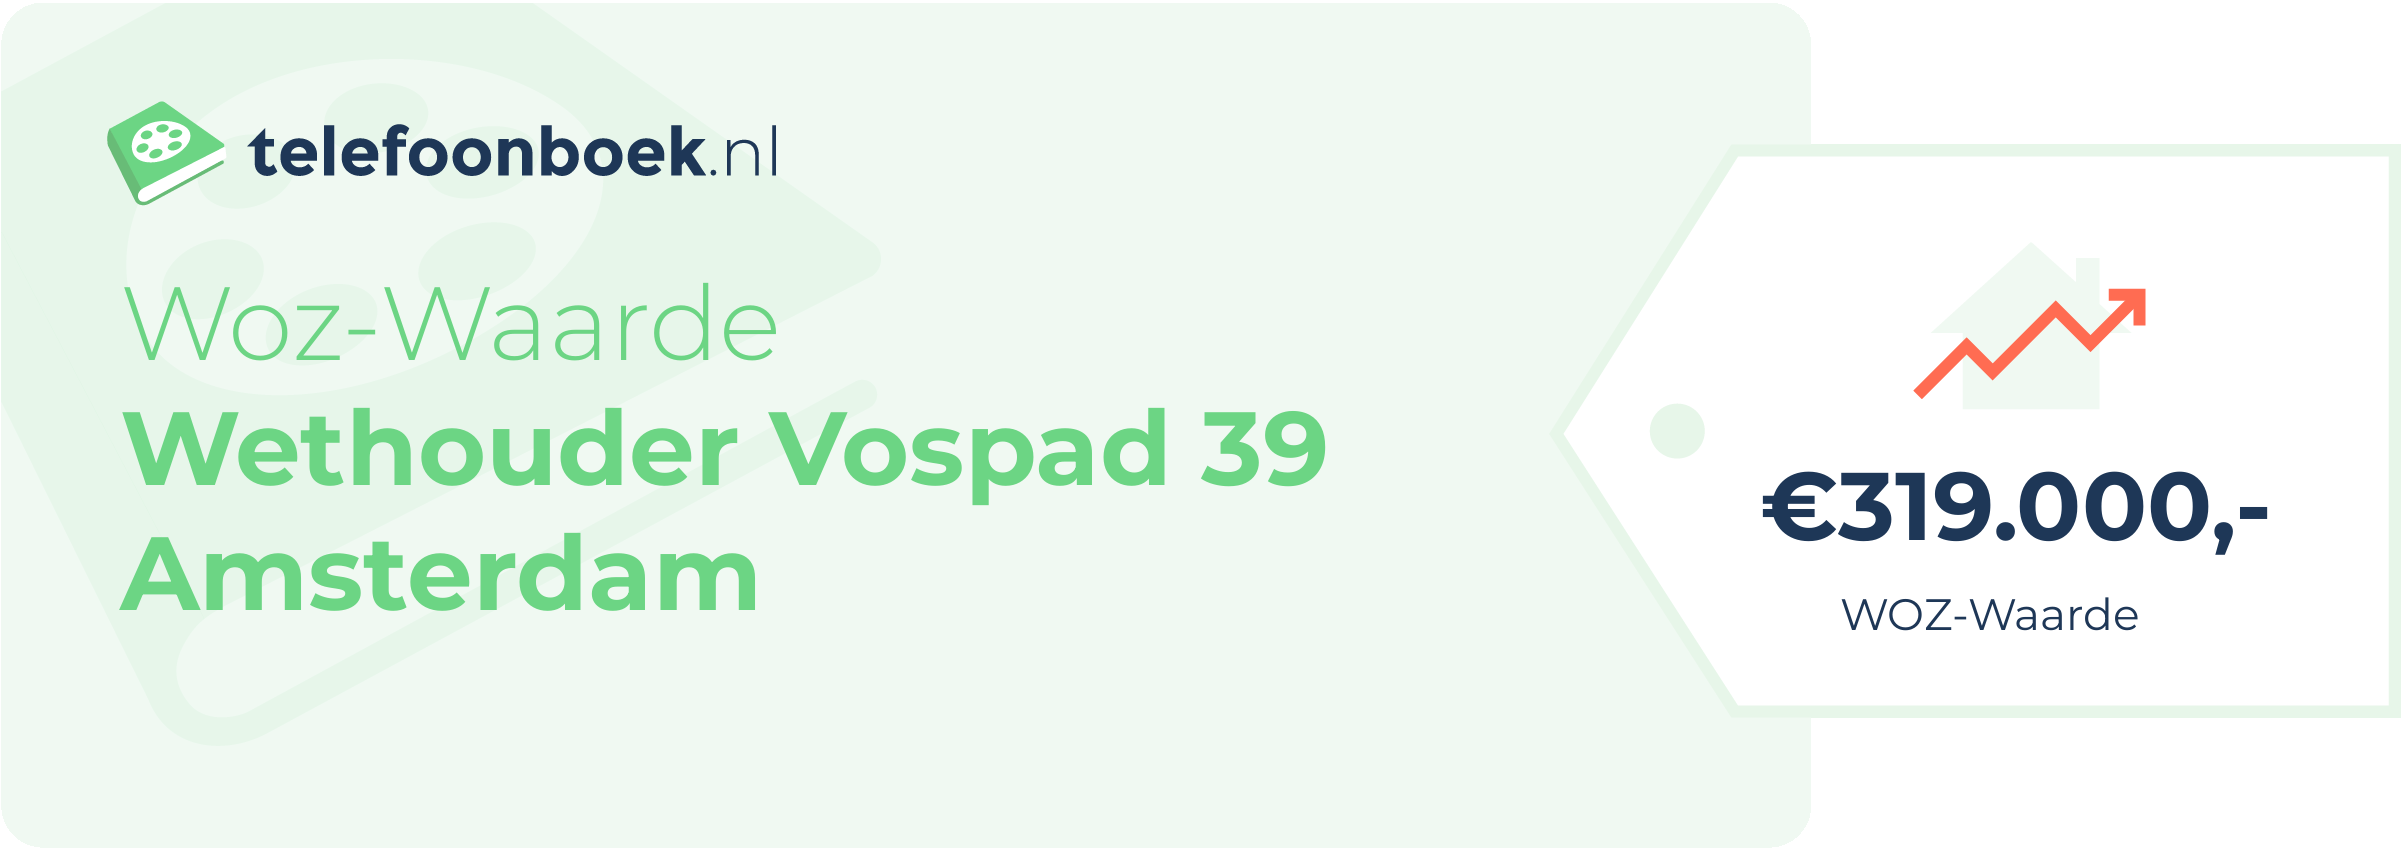 WOZ-waarde Wethouder Vospad 39 Amsterdam